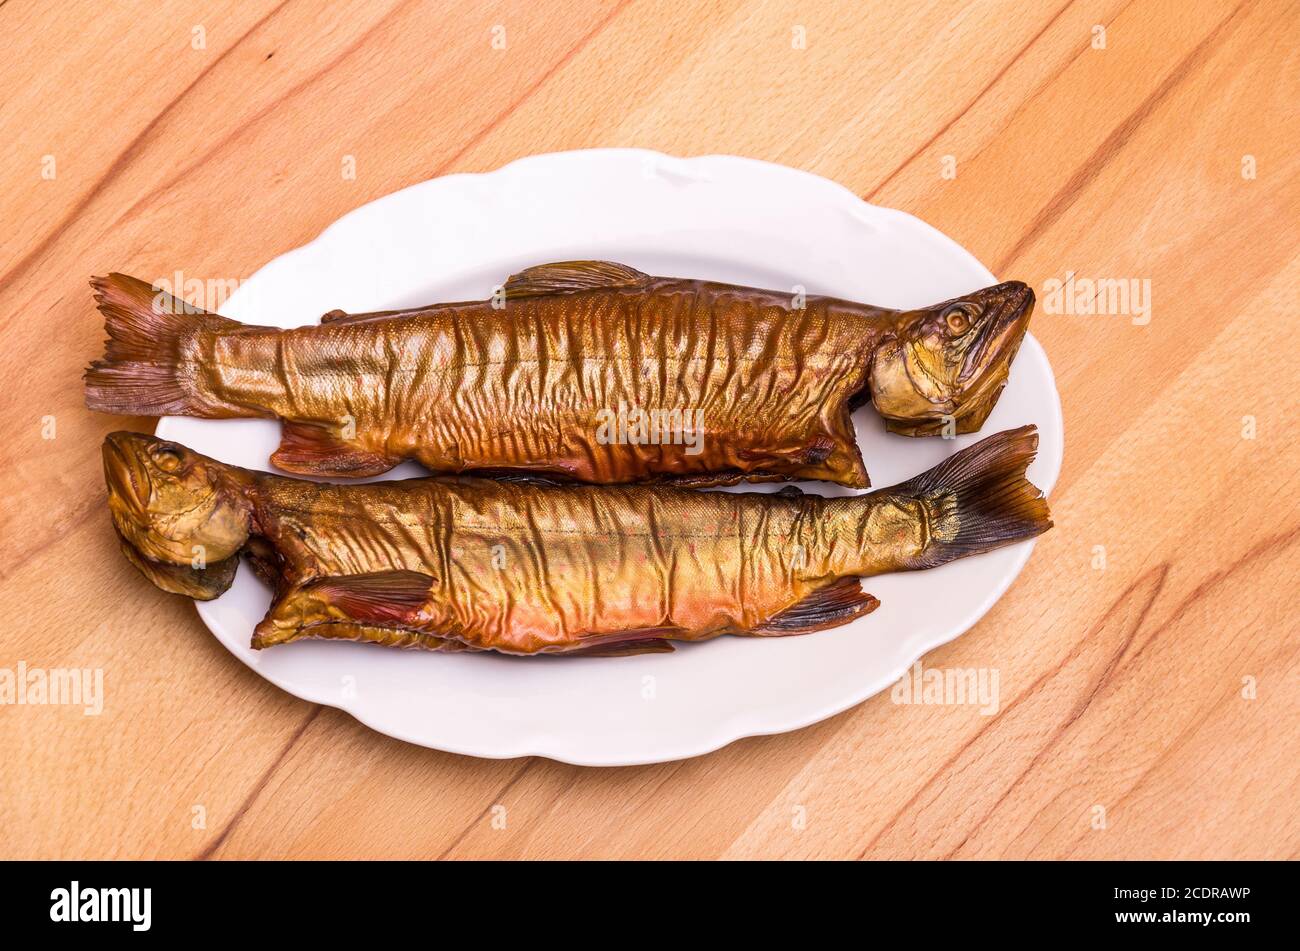 Zwei geräucherte Fische, Bachforelle, auf einem weißen Teller auf einem Buchentisch. Stockfoto